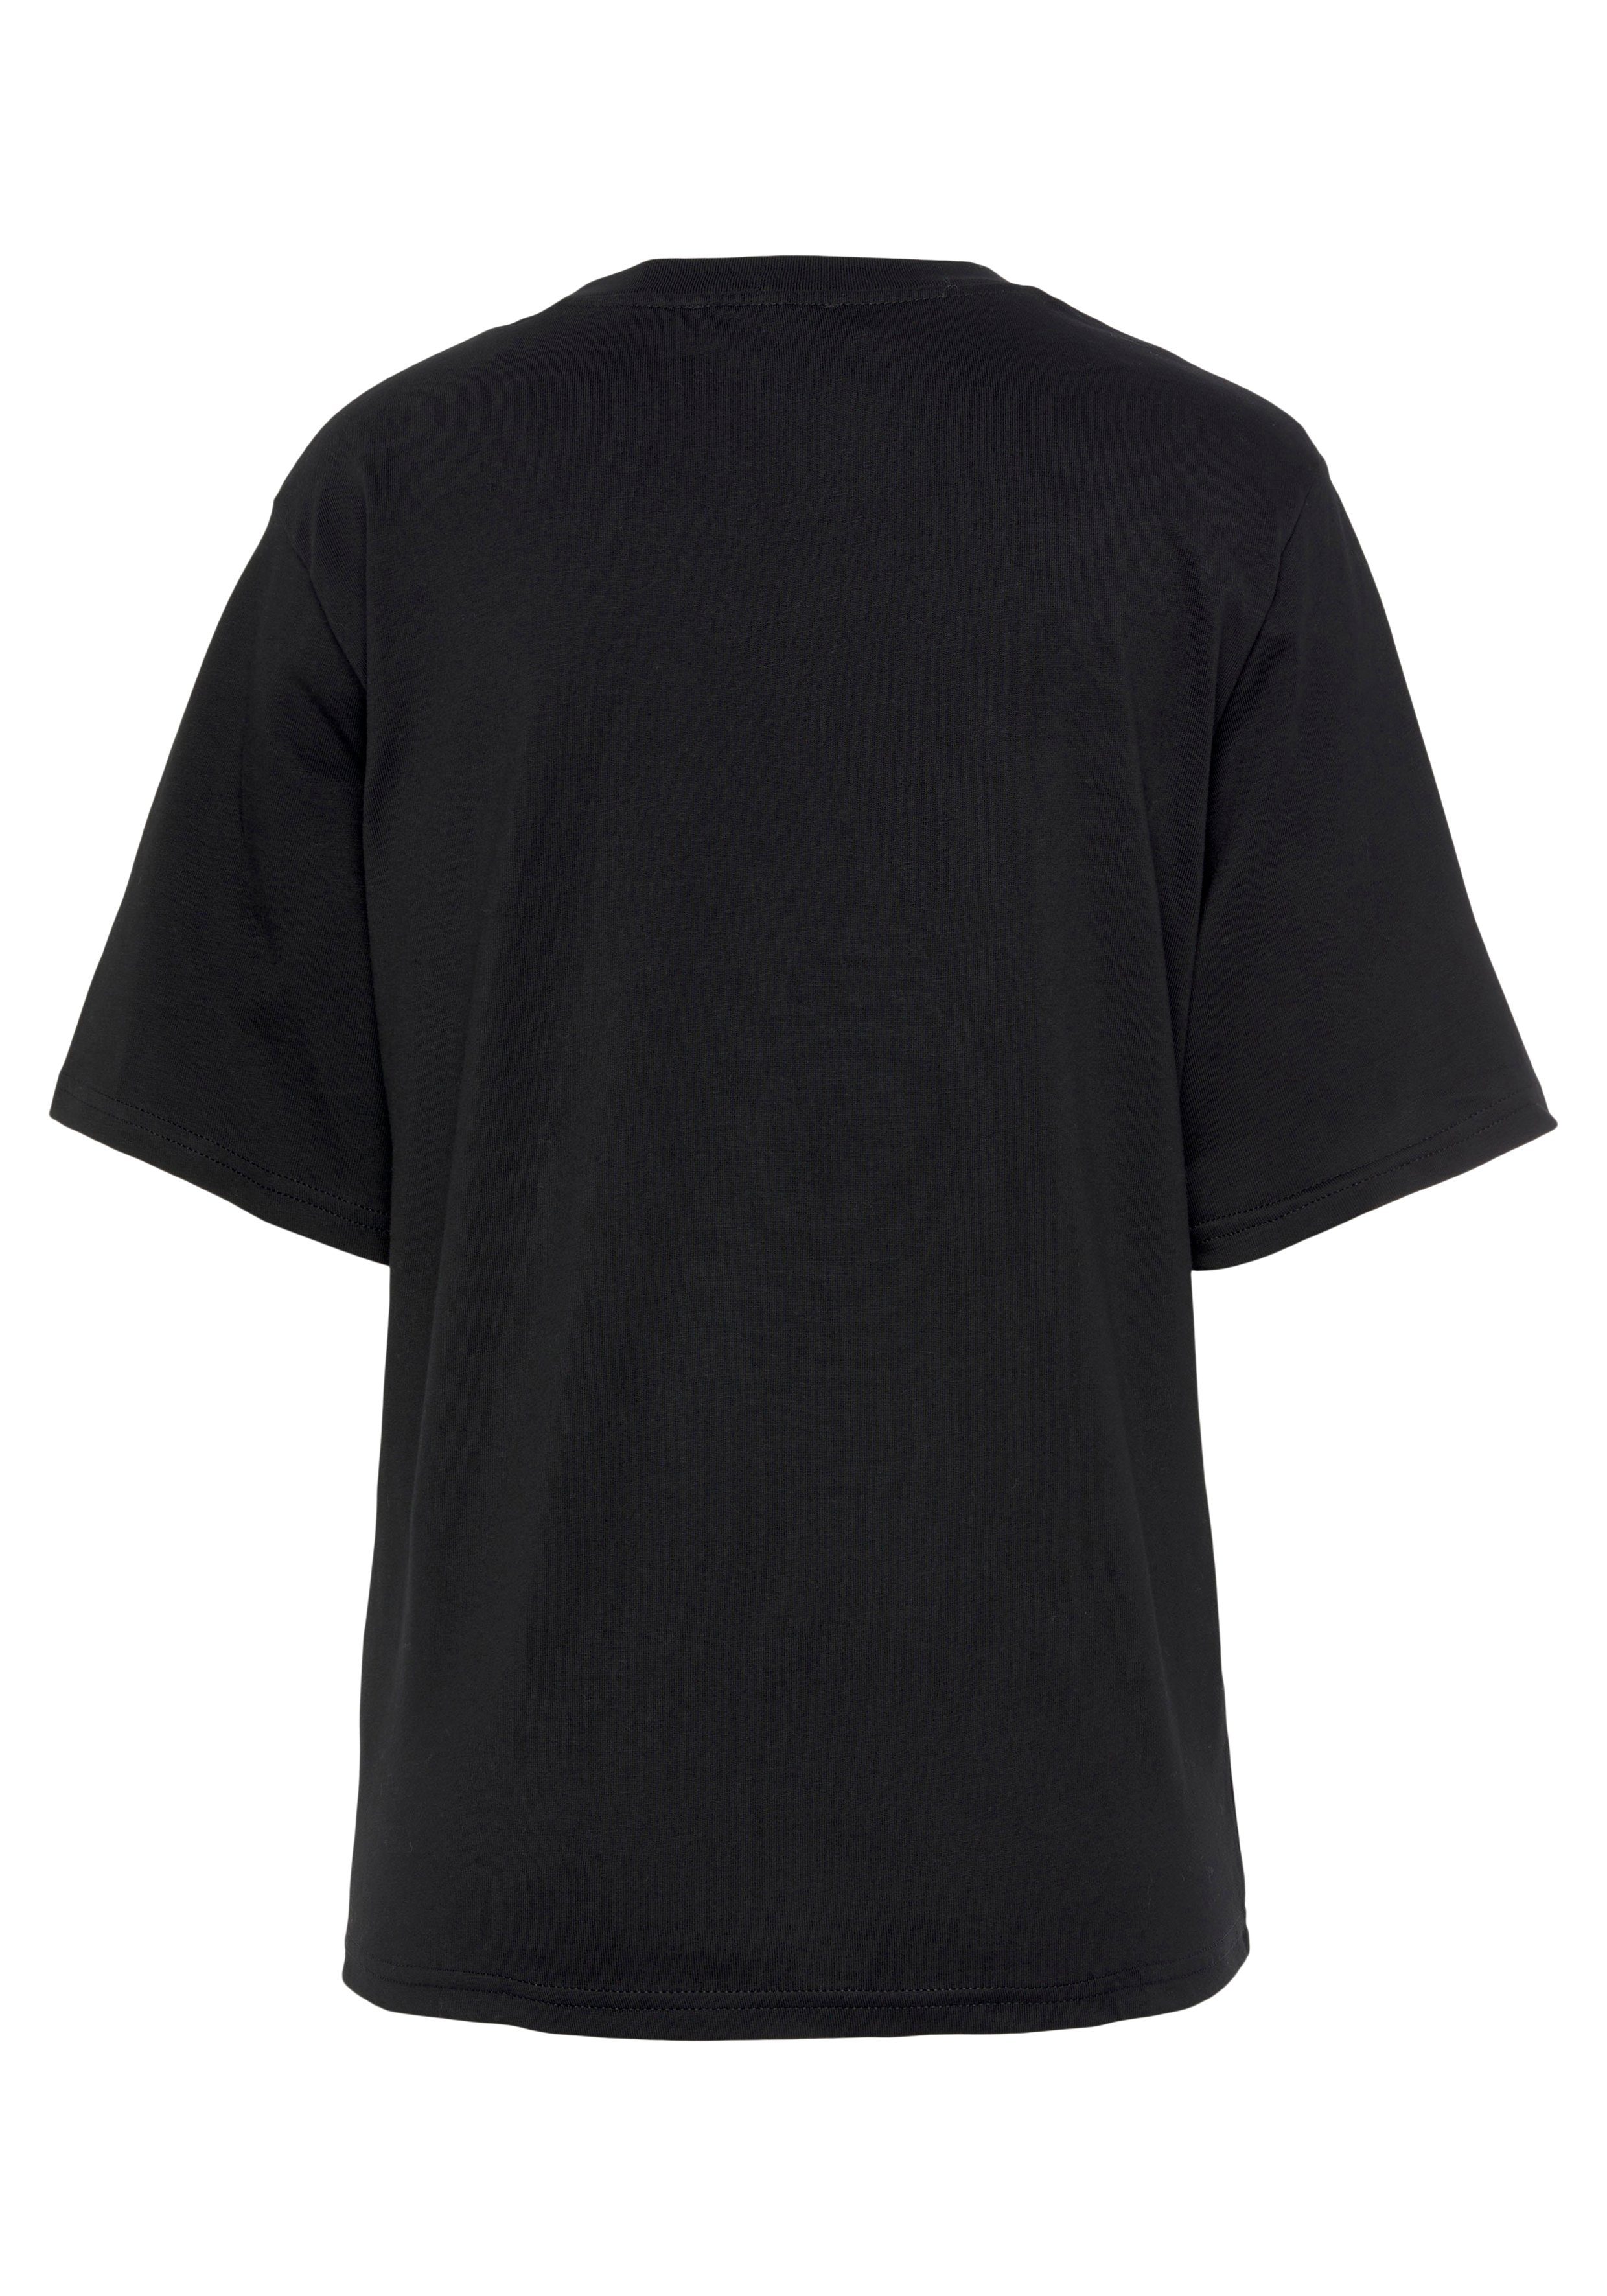 Benetton of mit Logodruck United der Brust auf schwarz Colors T-Shirt